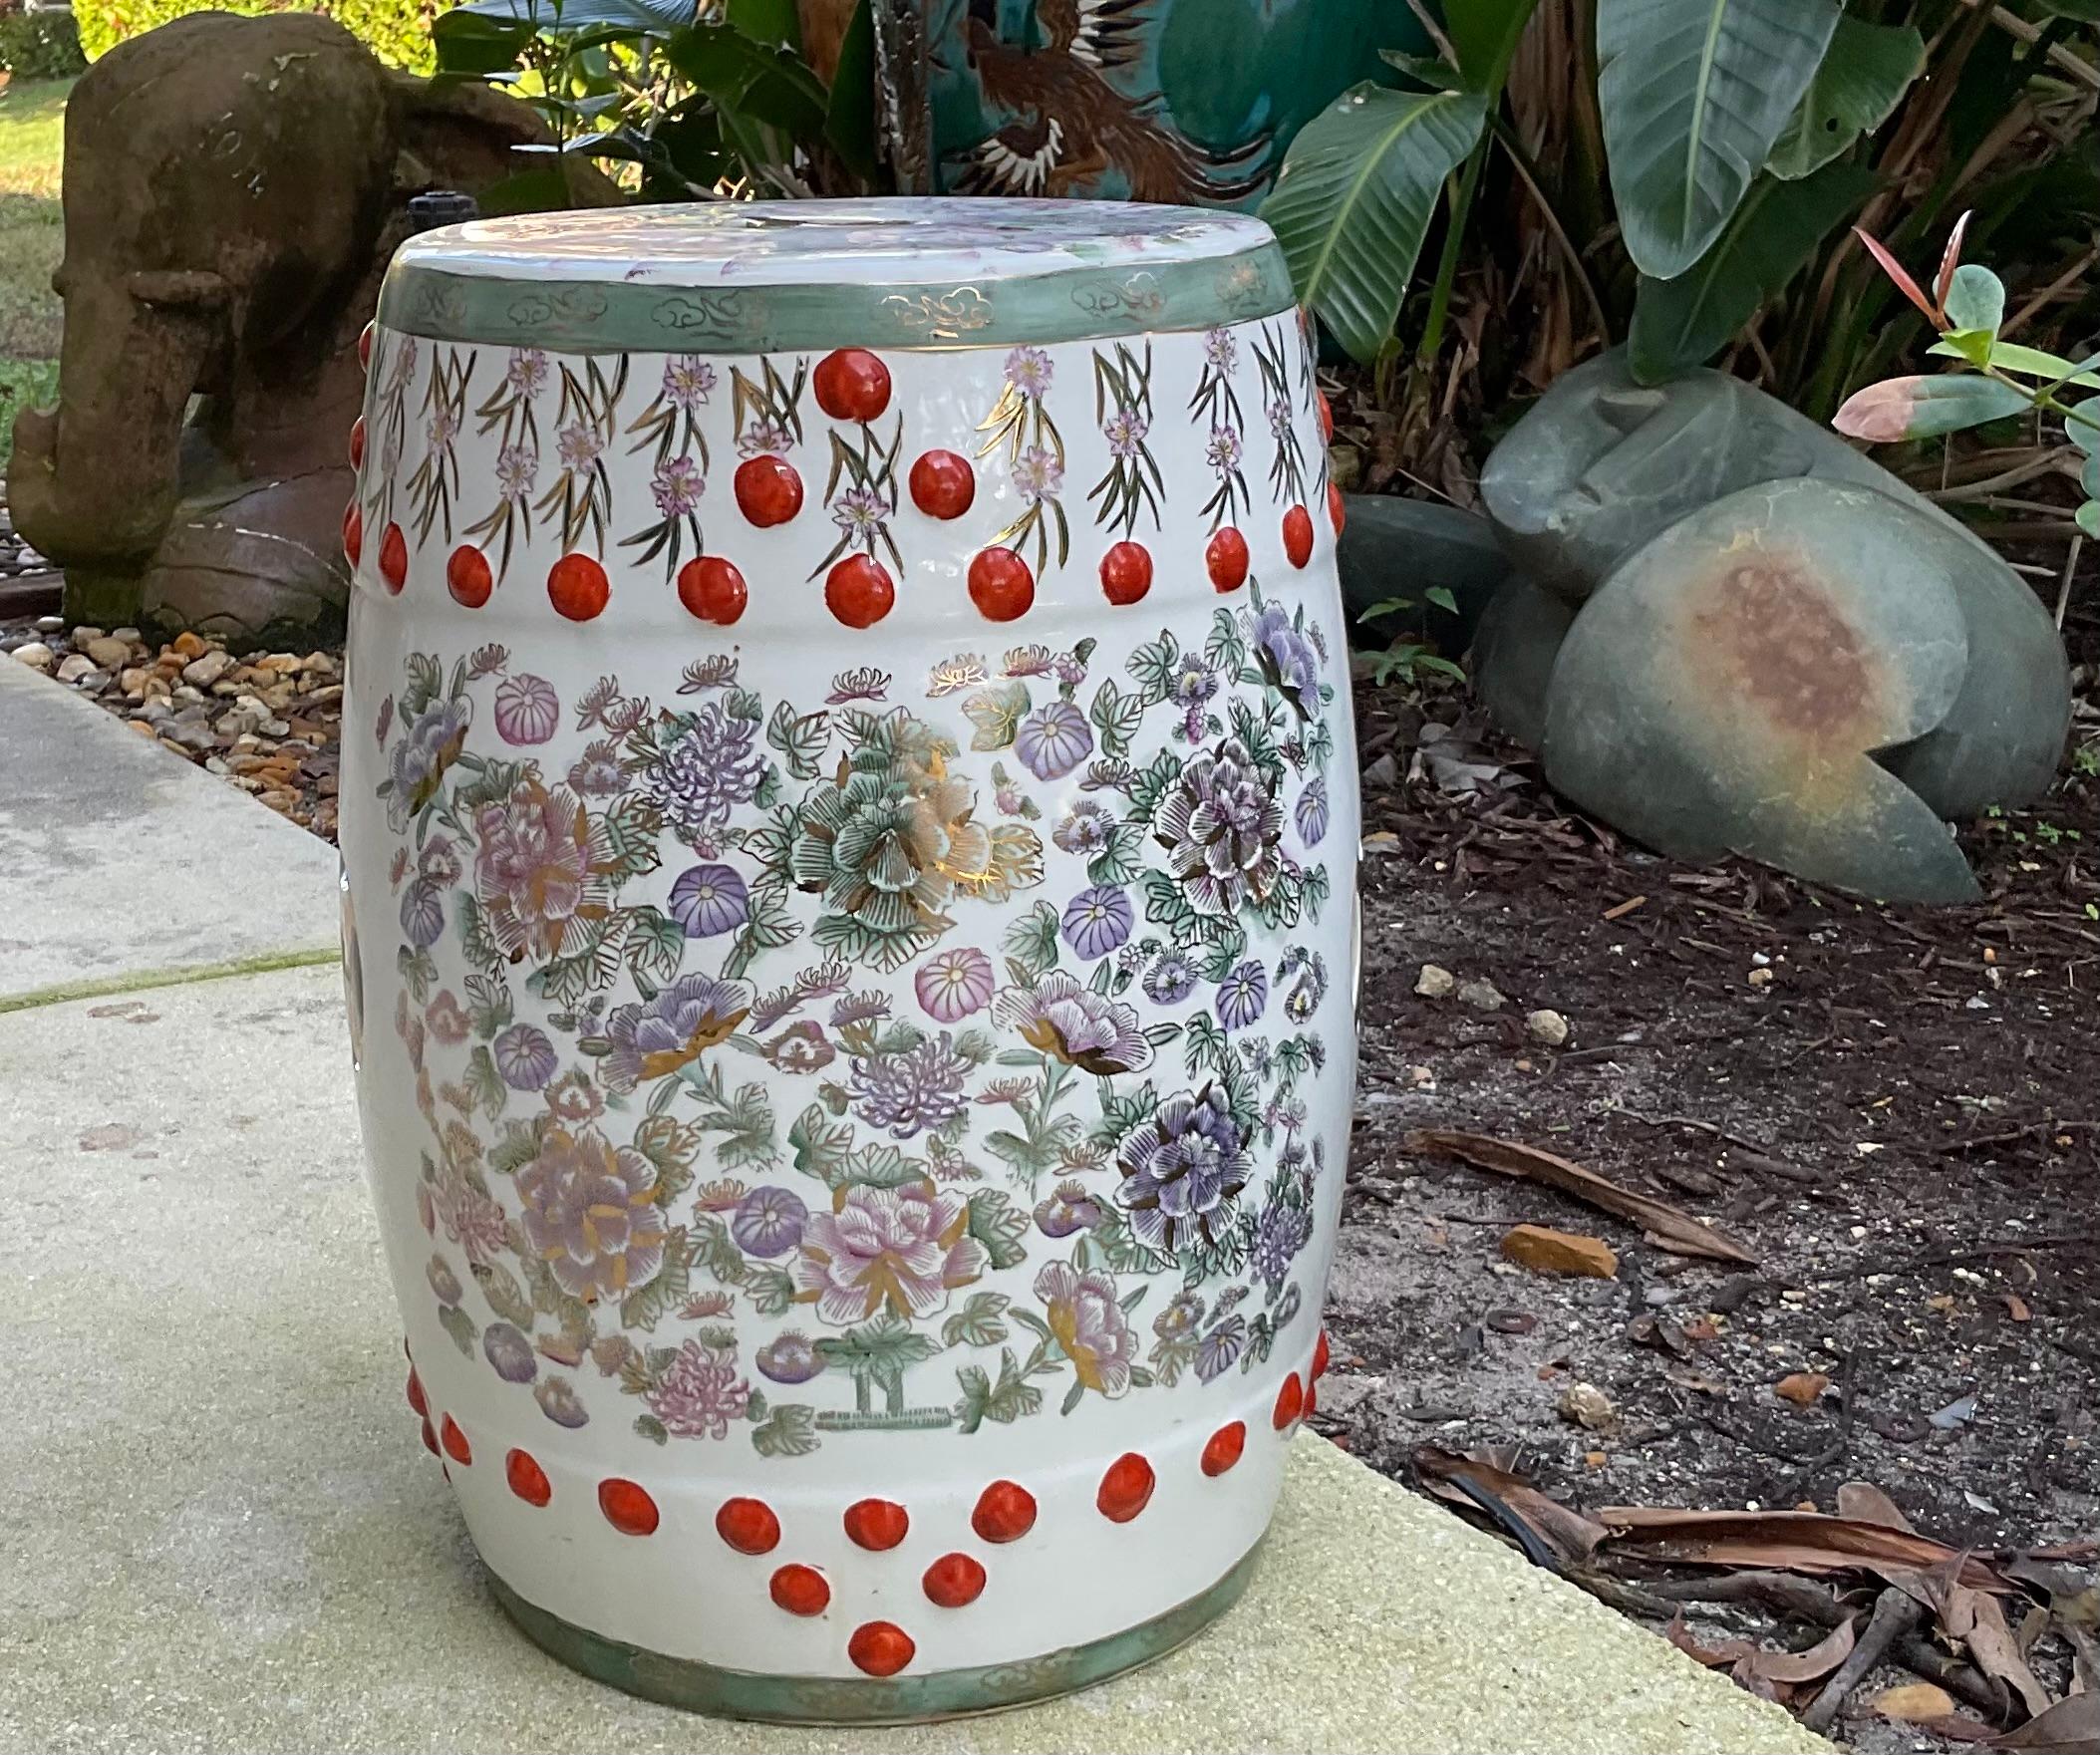 Eine schöne  Chinesischer Keramik-Gartenhocker, klassische Tonnenform, Darstellung von floralen Gartenlandschaftsgruppen in sanften Farben. 
Außergewöhnliches Kunstobjekt zum Ausstellen.